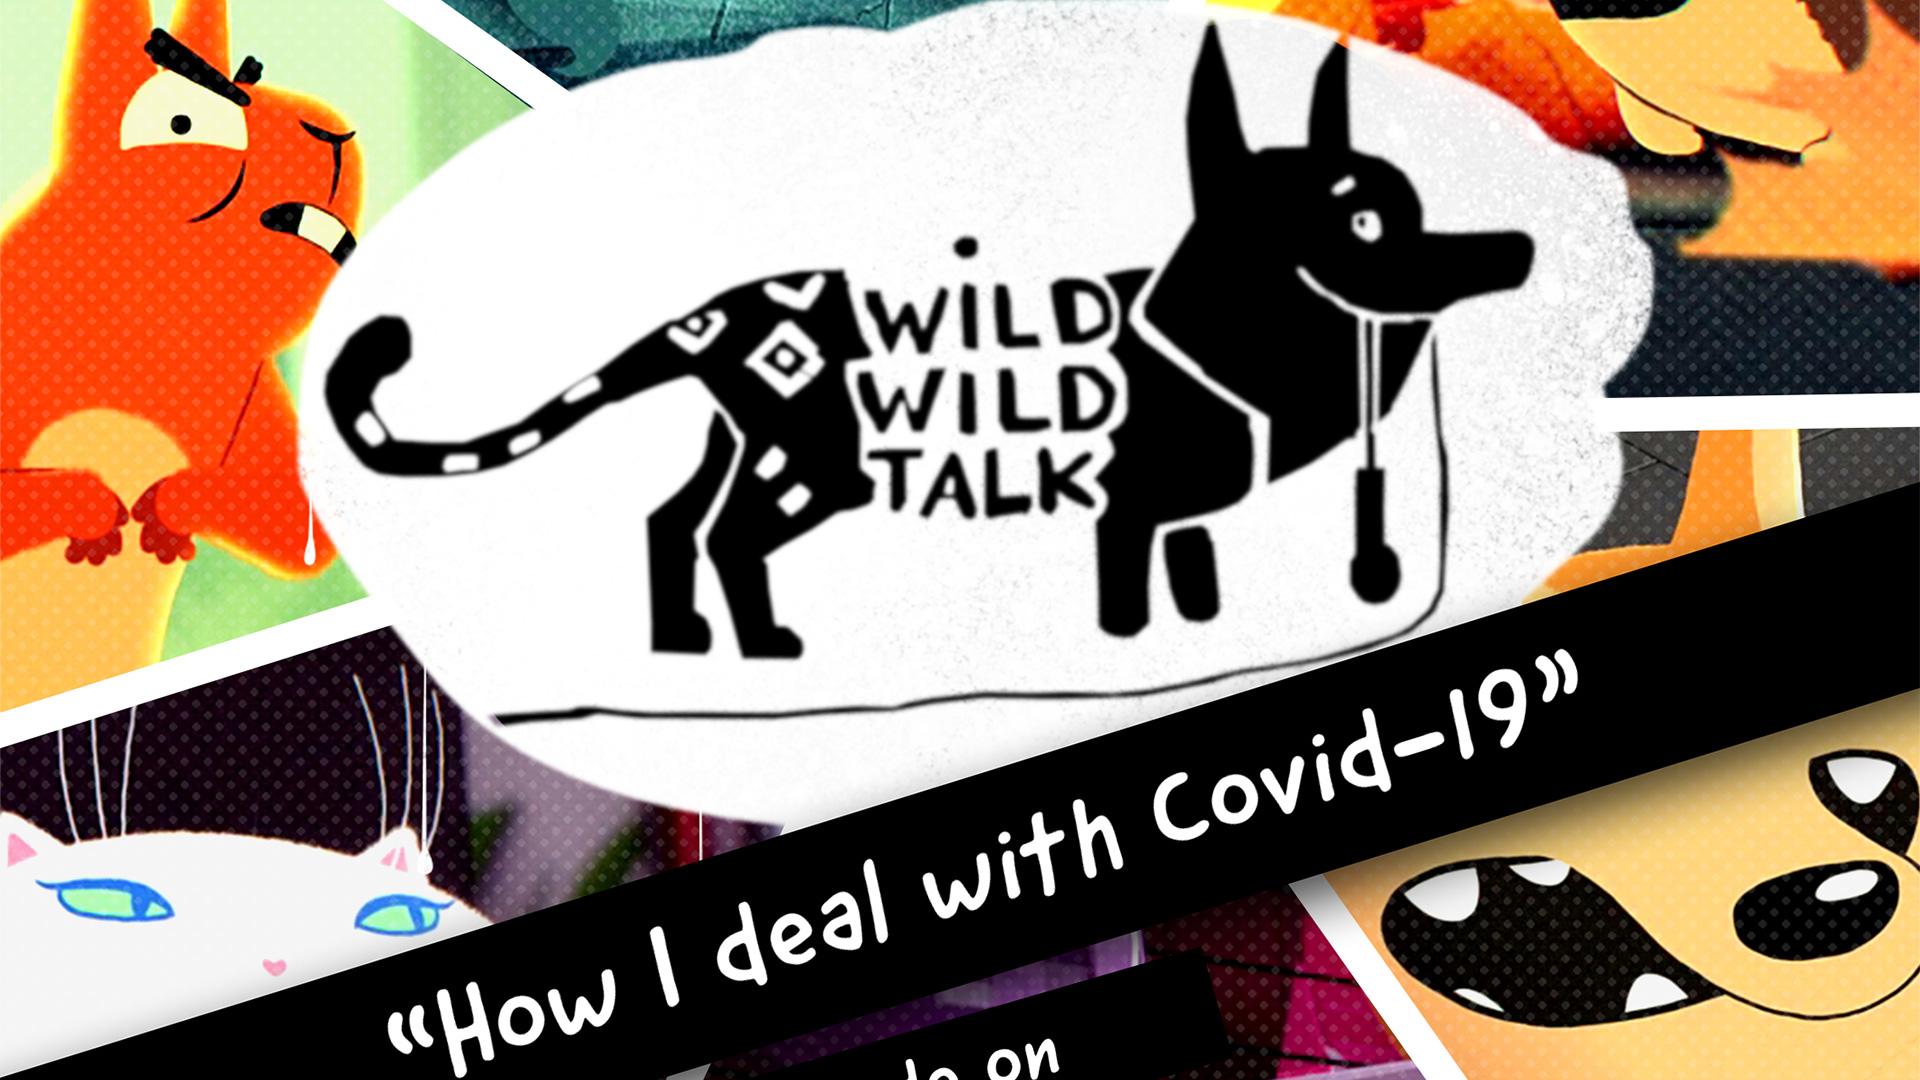 Wild Wild Talk (english version)